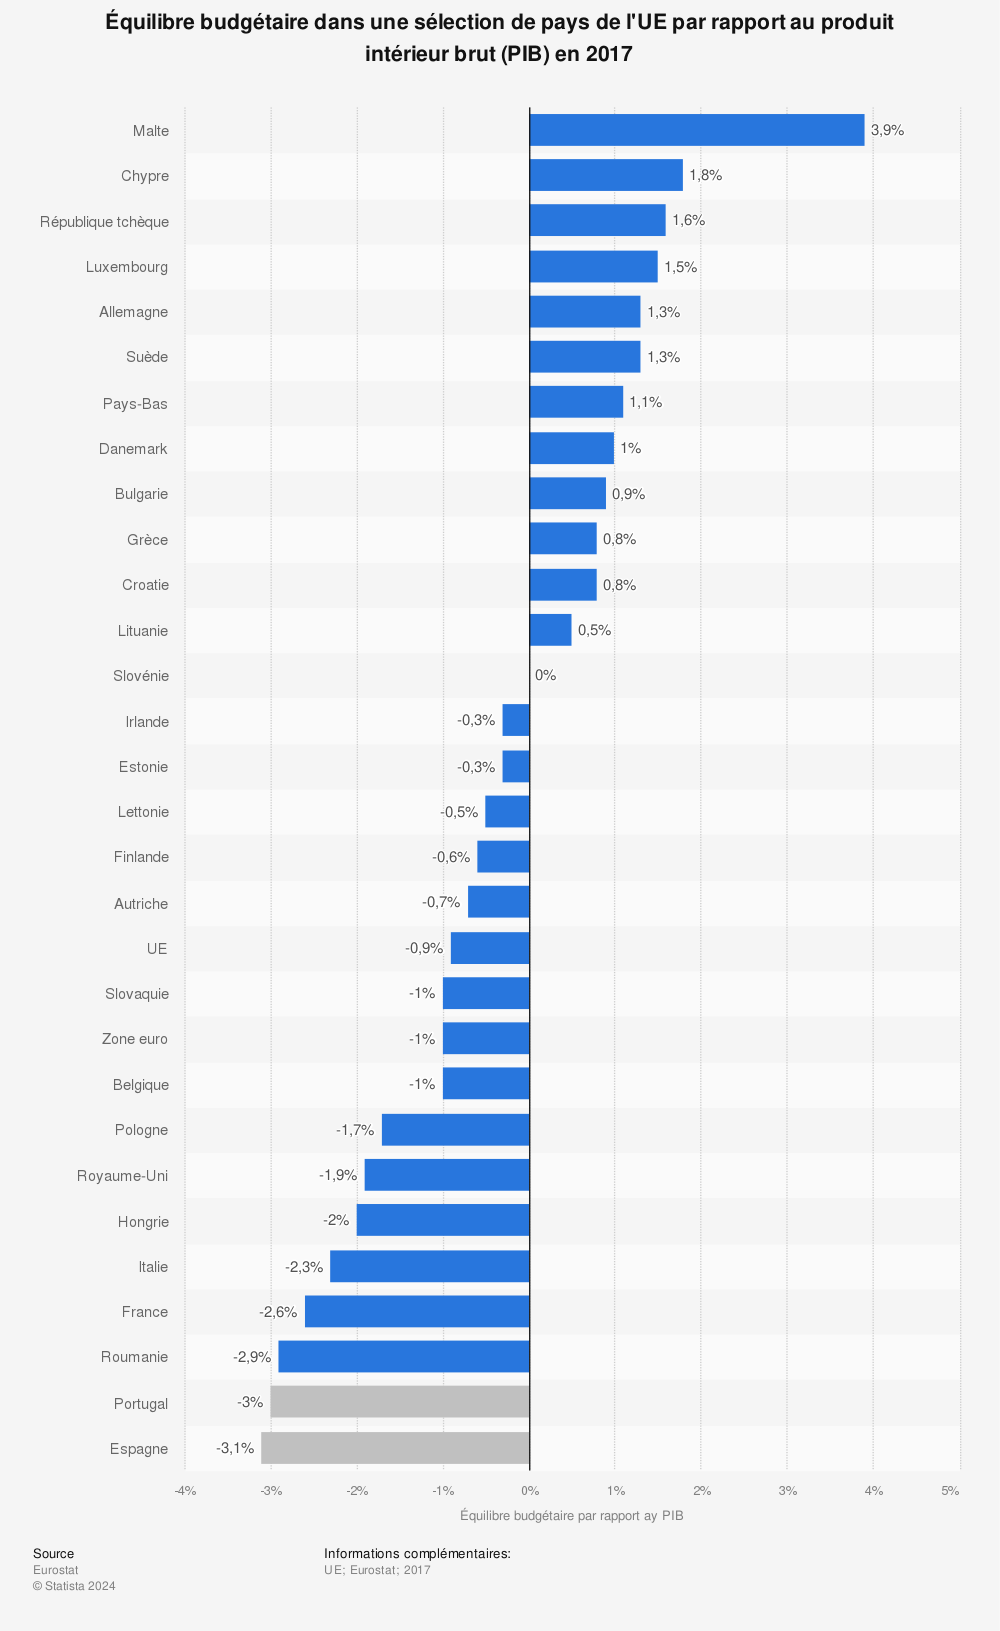 Statistique: Équilibre budgétaire dans une sélection de pays de l'UE par rapport au produit intérieur brut (PIB) en 2017 | Statista